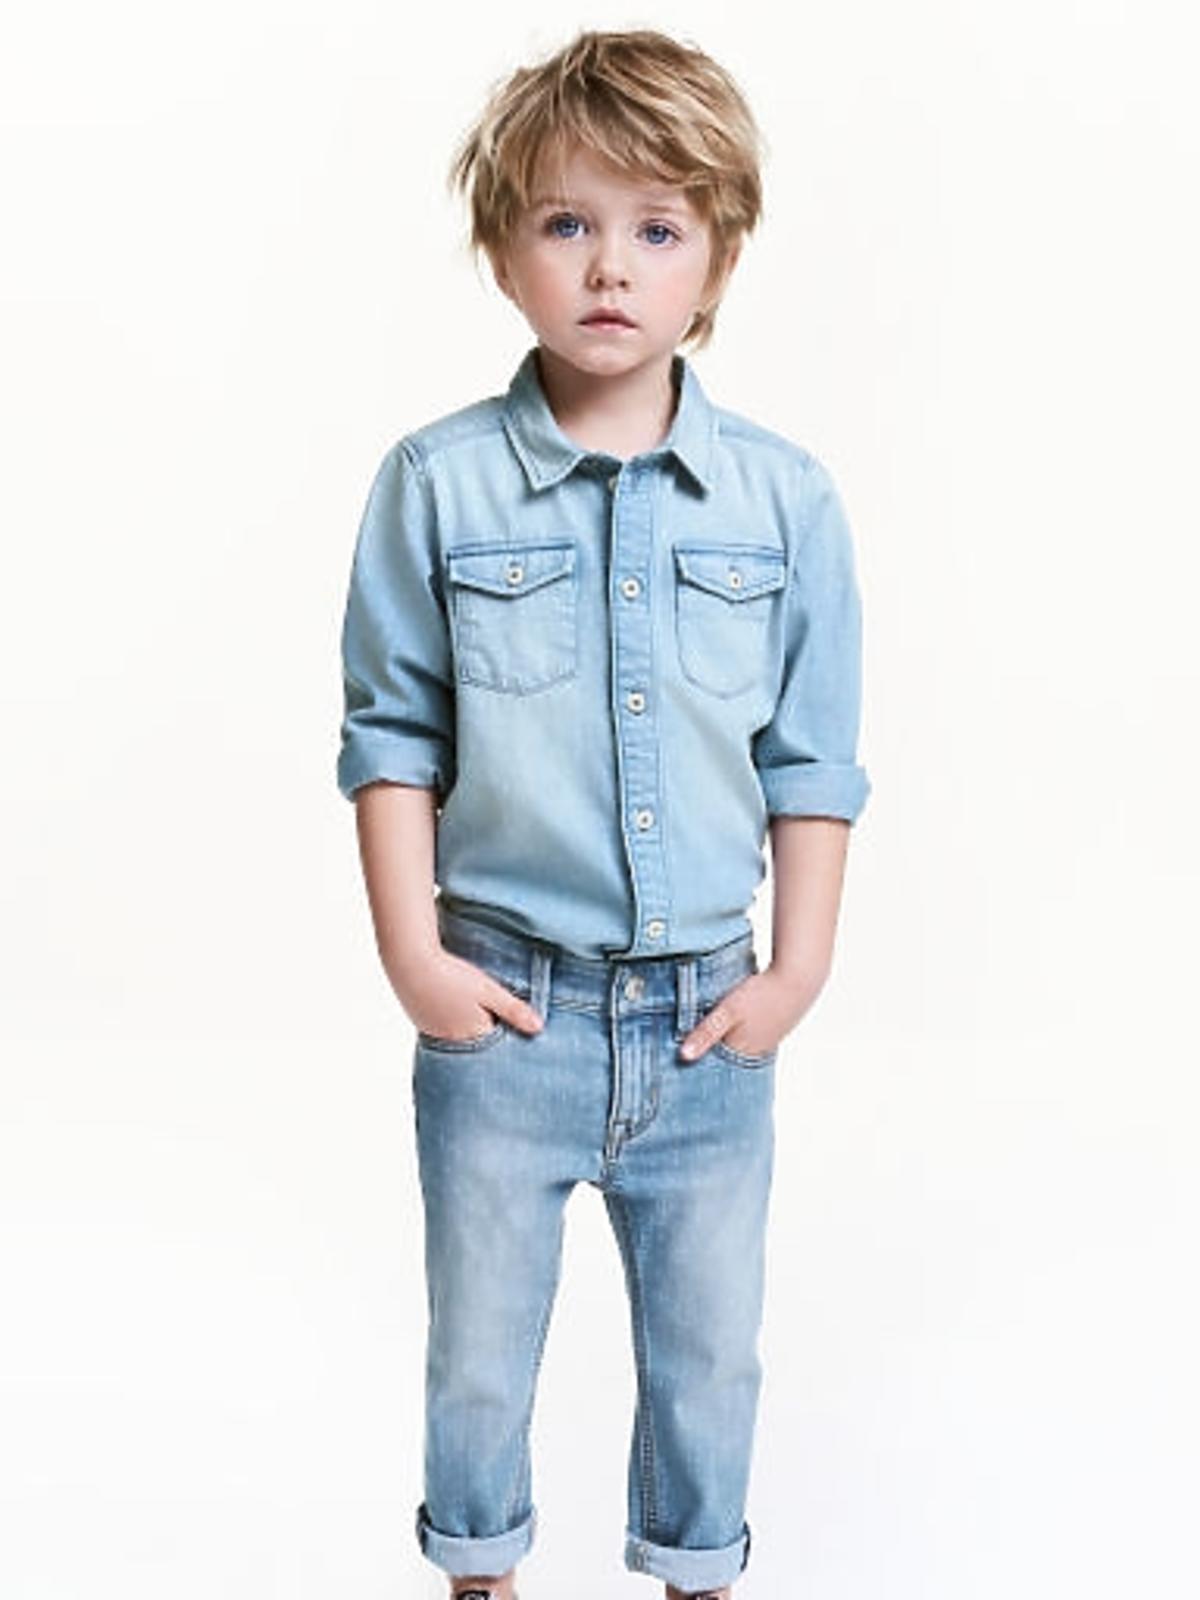 wąskie jeansy dla chłopca 41.90zł z 59.90zł hm.com.jpg